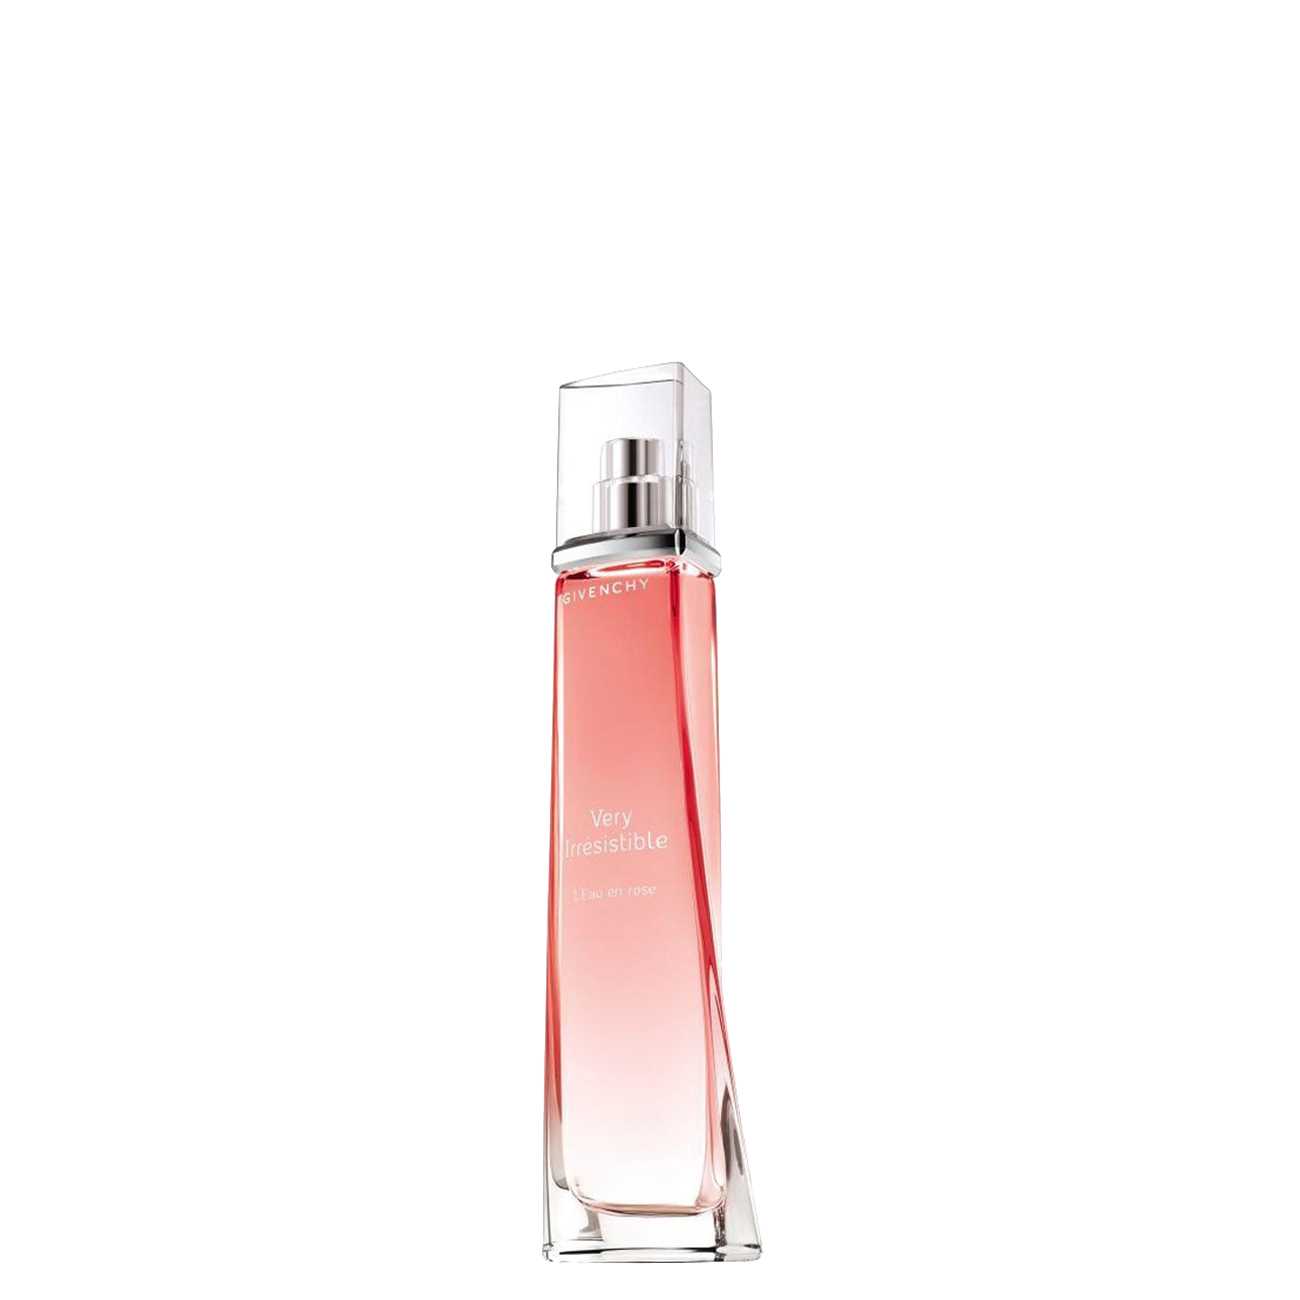 Apa de Toaleta Givenchy VERY IRRESISTIBLE EAU EN ROSE 50 ML 50ml cu comanda online